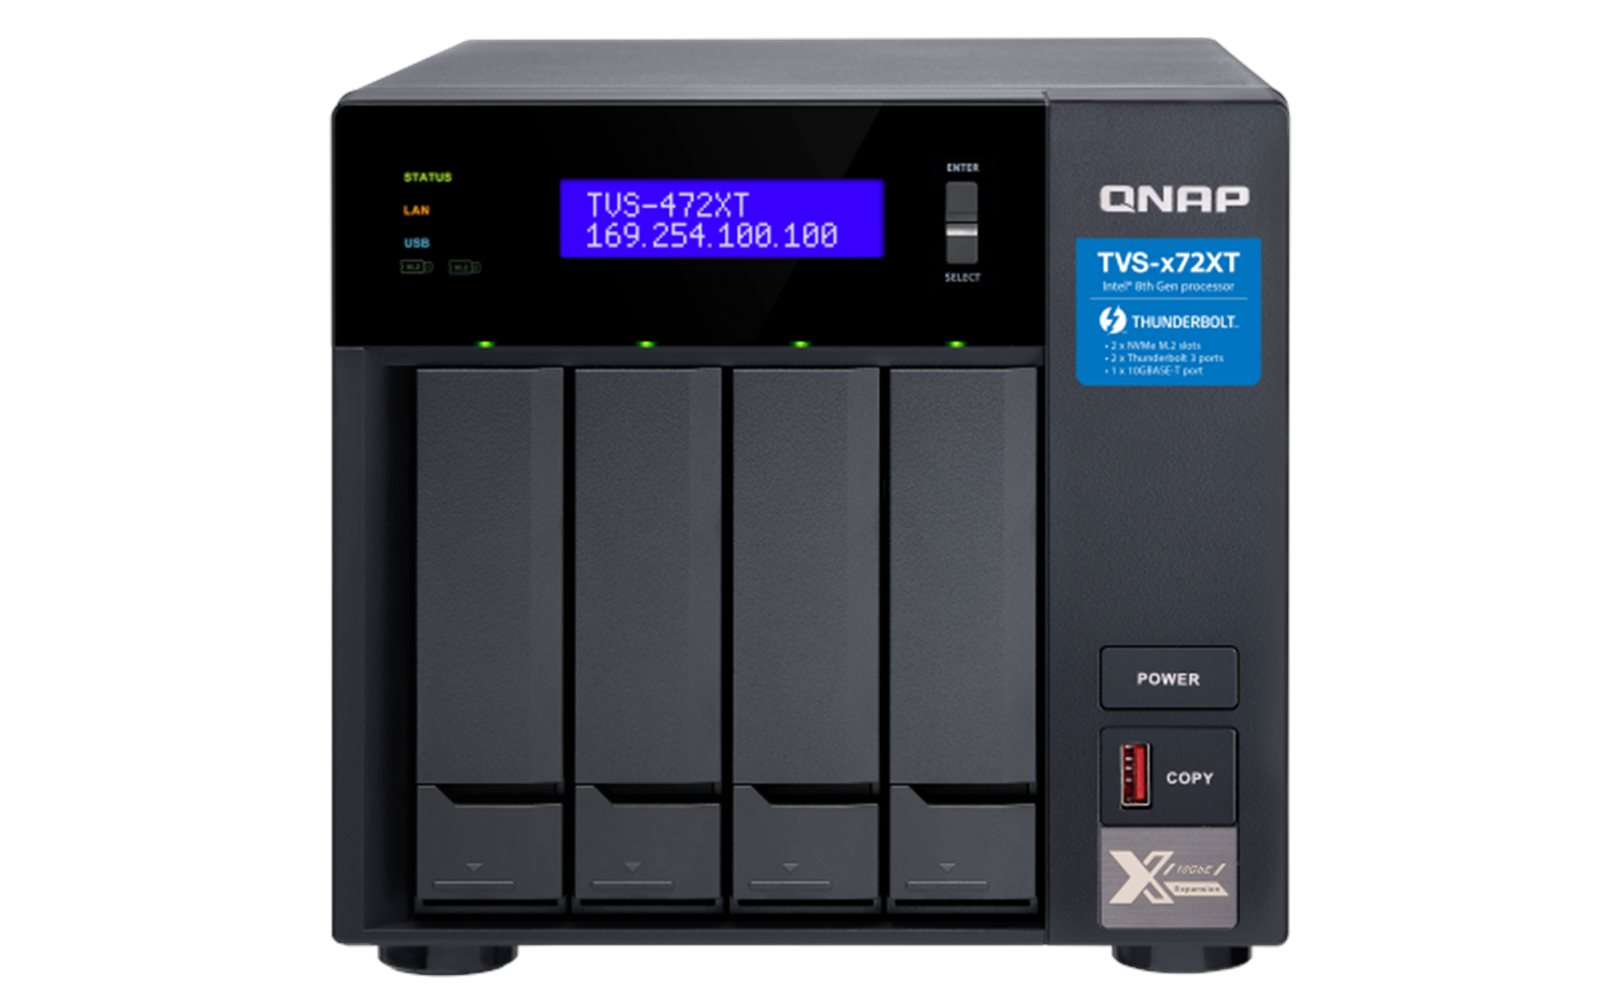 QNAP TVS-472XT-i3-4G (3,1GHz / 4GB RAM / 4x SATA / 2x M.2 NVMe slot /